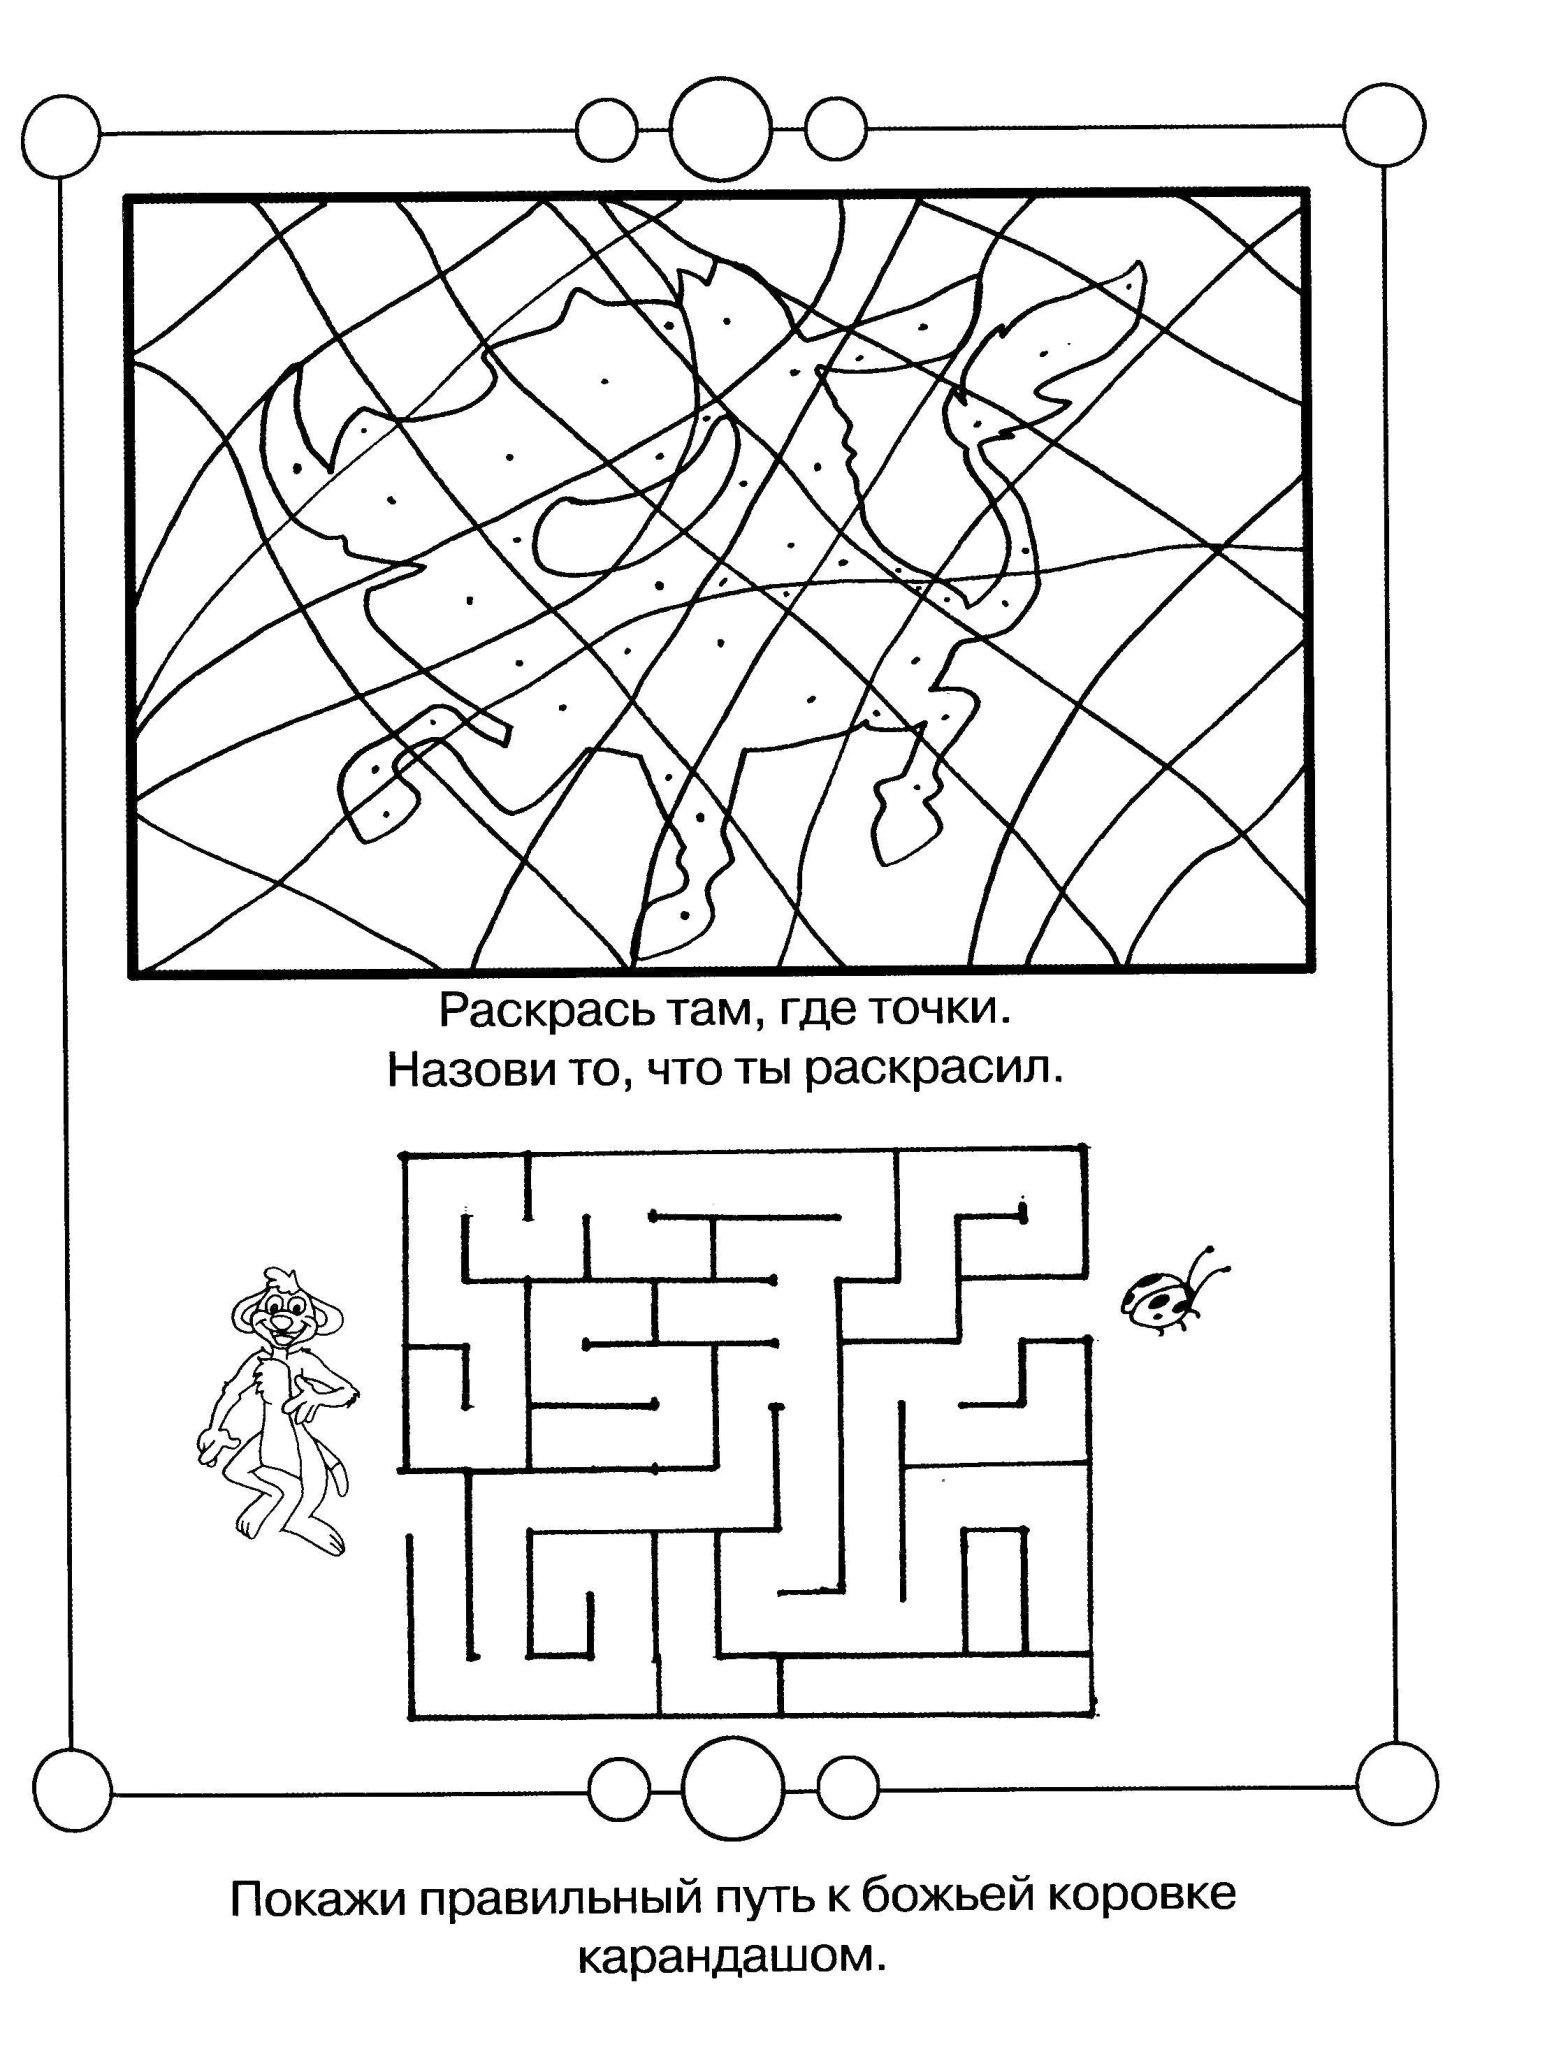 Раскраски с ребусами для развития логики и внимательности у детей (ребусы, сказки)